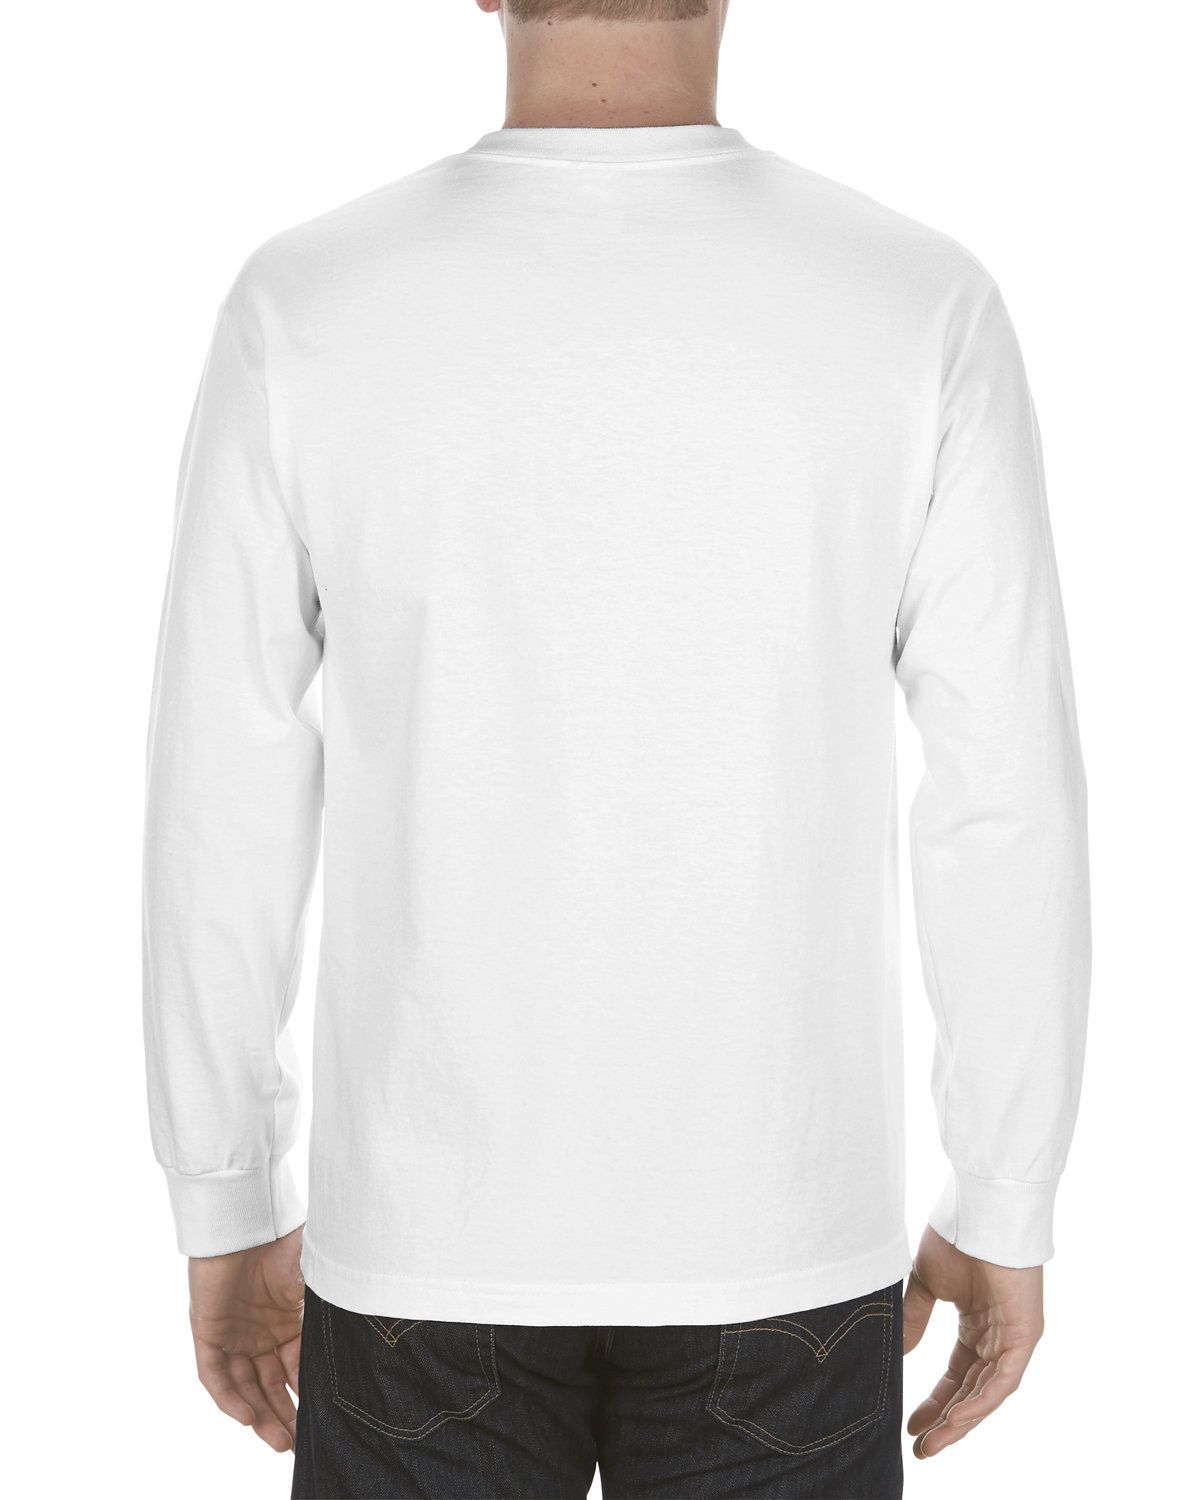 'Alstyle AL1304 Adult 6.0 Oz., 100% Cotton Long Sleeve T Shirt'